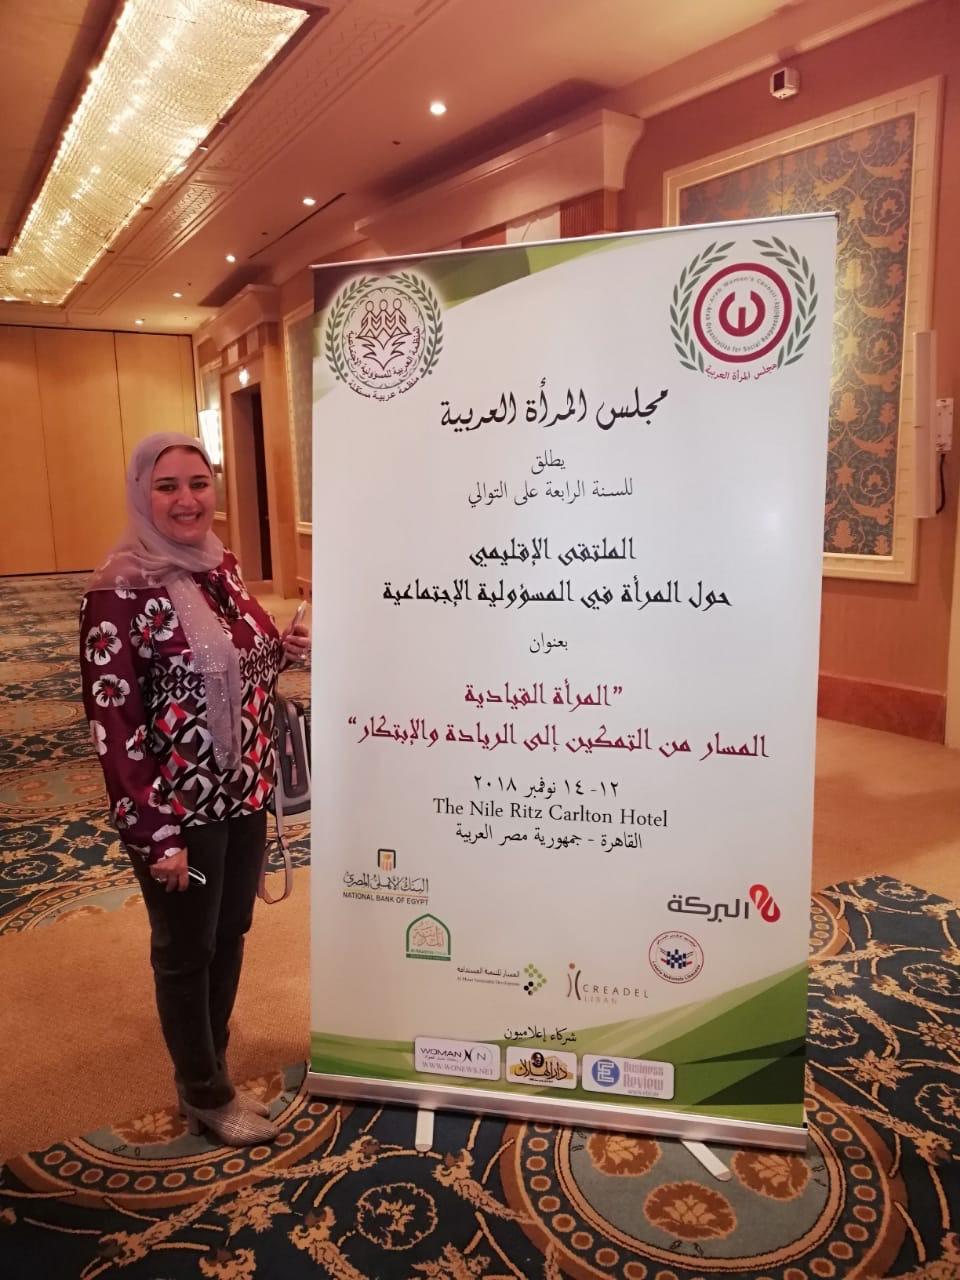   العربي لسيدات الأعمال يشارك في فعاليات الملتقي الإقليمي لمجلس المرأة العربية